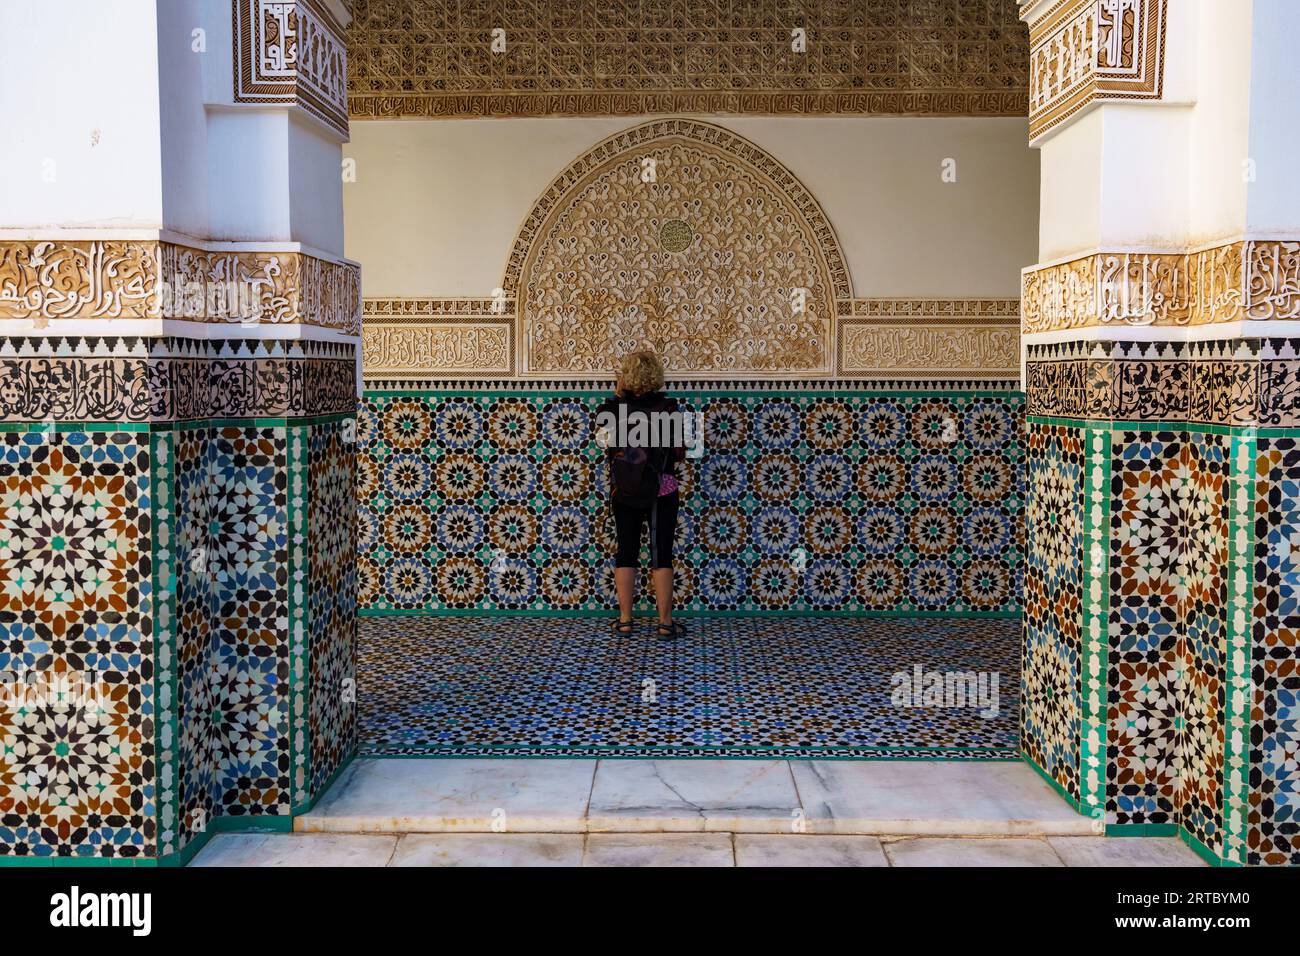 Afrique du Nord. Maroc. Marrakech. Madrasa Ben Youssef. La madrassah la plus grande et la plus importante du Maroc. Femme touriste regarde l'écriture coranique Banque D'Images